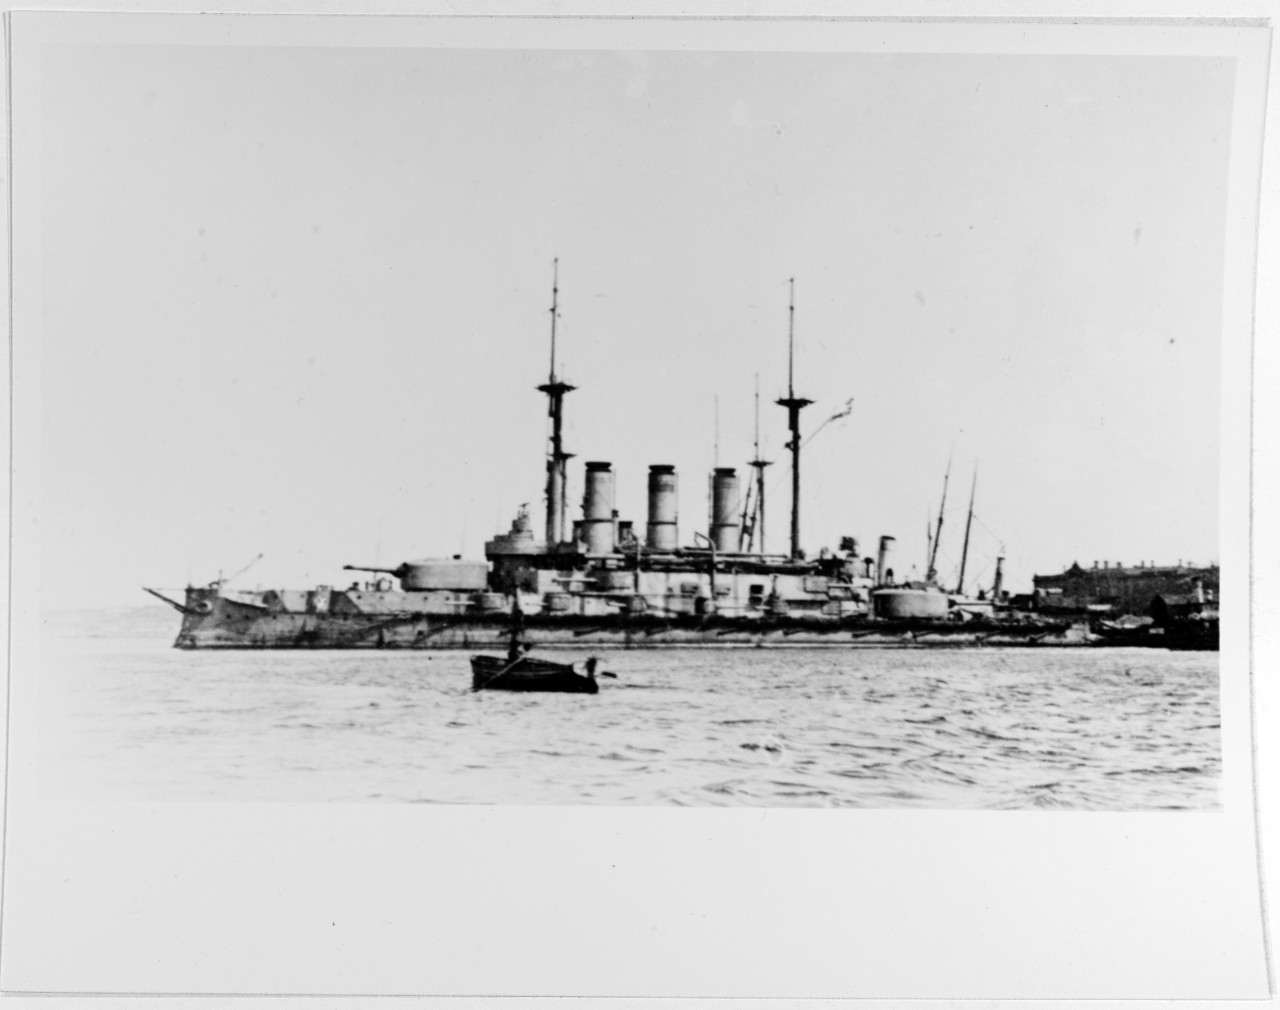 IOANN ZLATOUST (Russian Battleship, 1906-22)